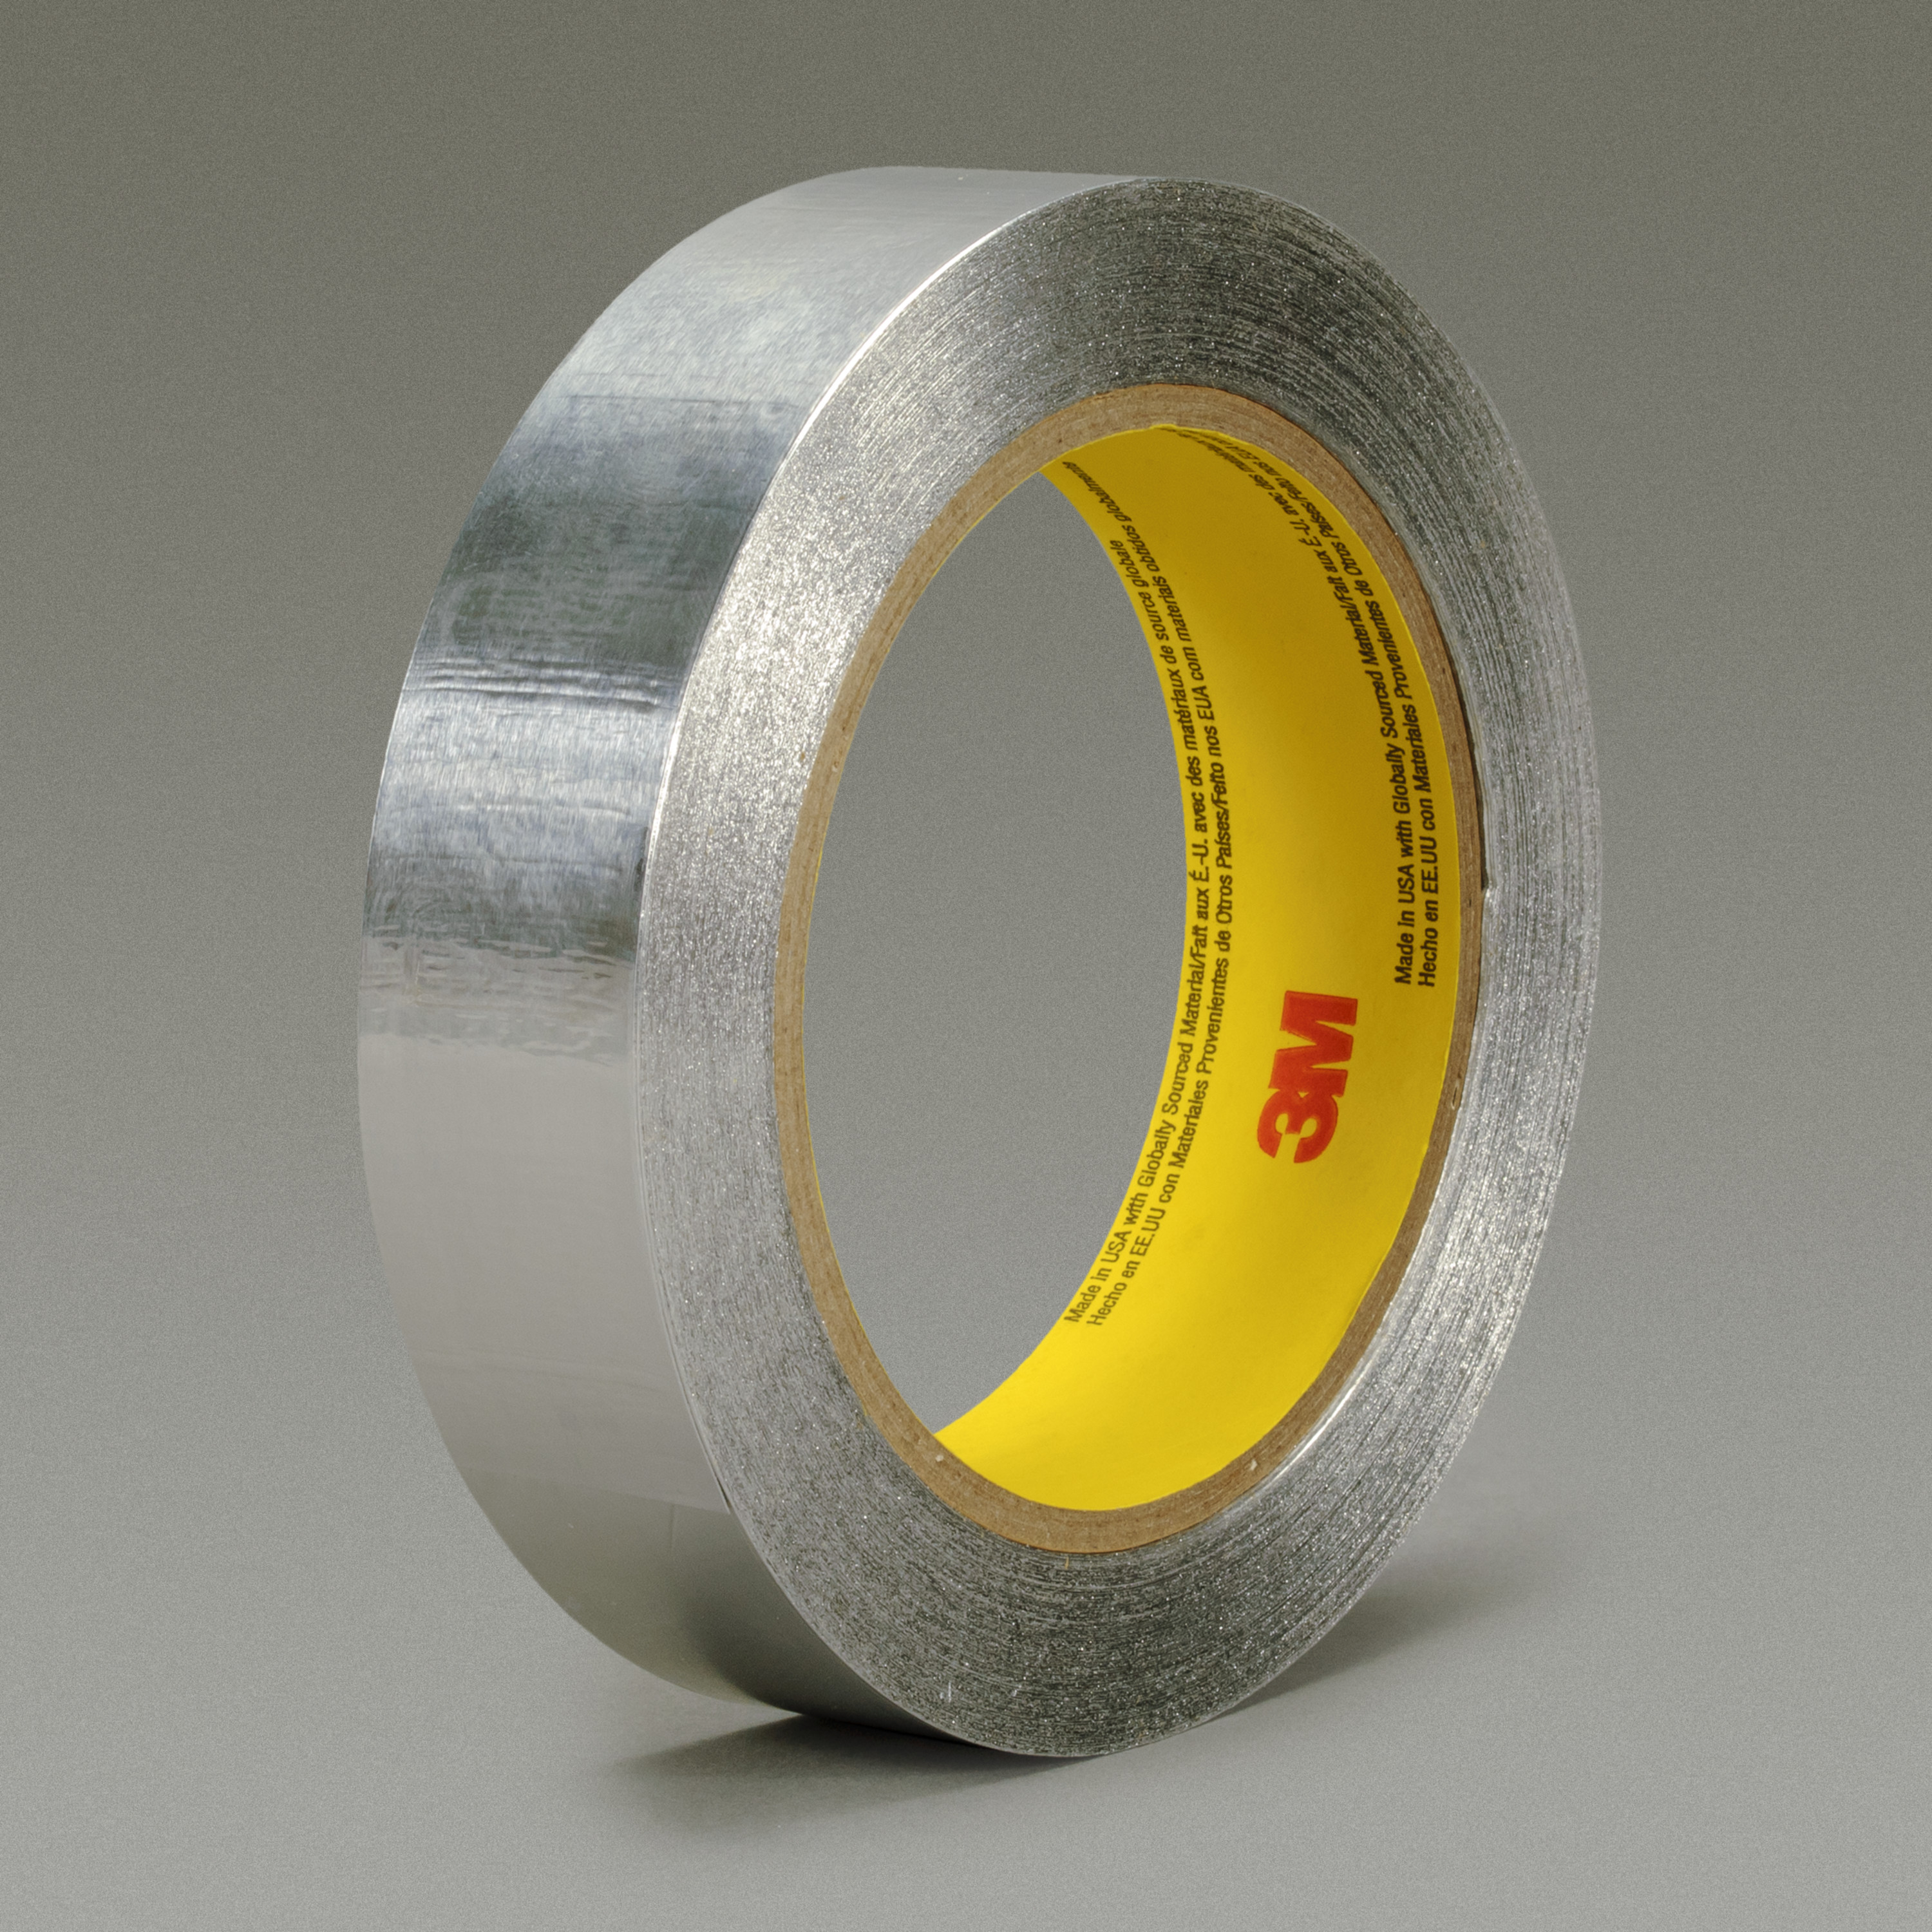 3M™ Aluminum Foil Tape 425, Silver, 1 in x 60 yd, 4.6 mil, 36 rolls per
case